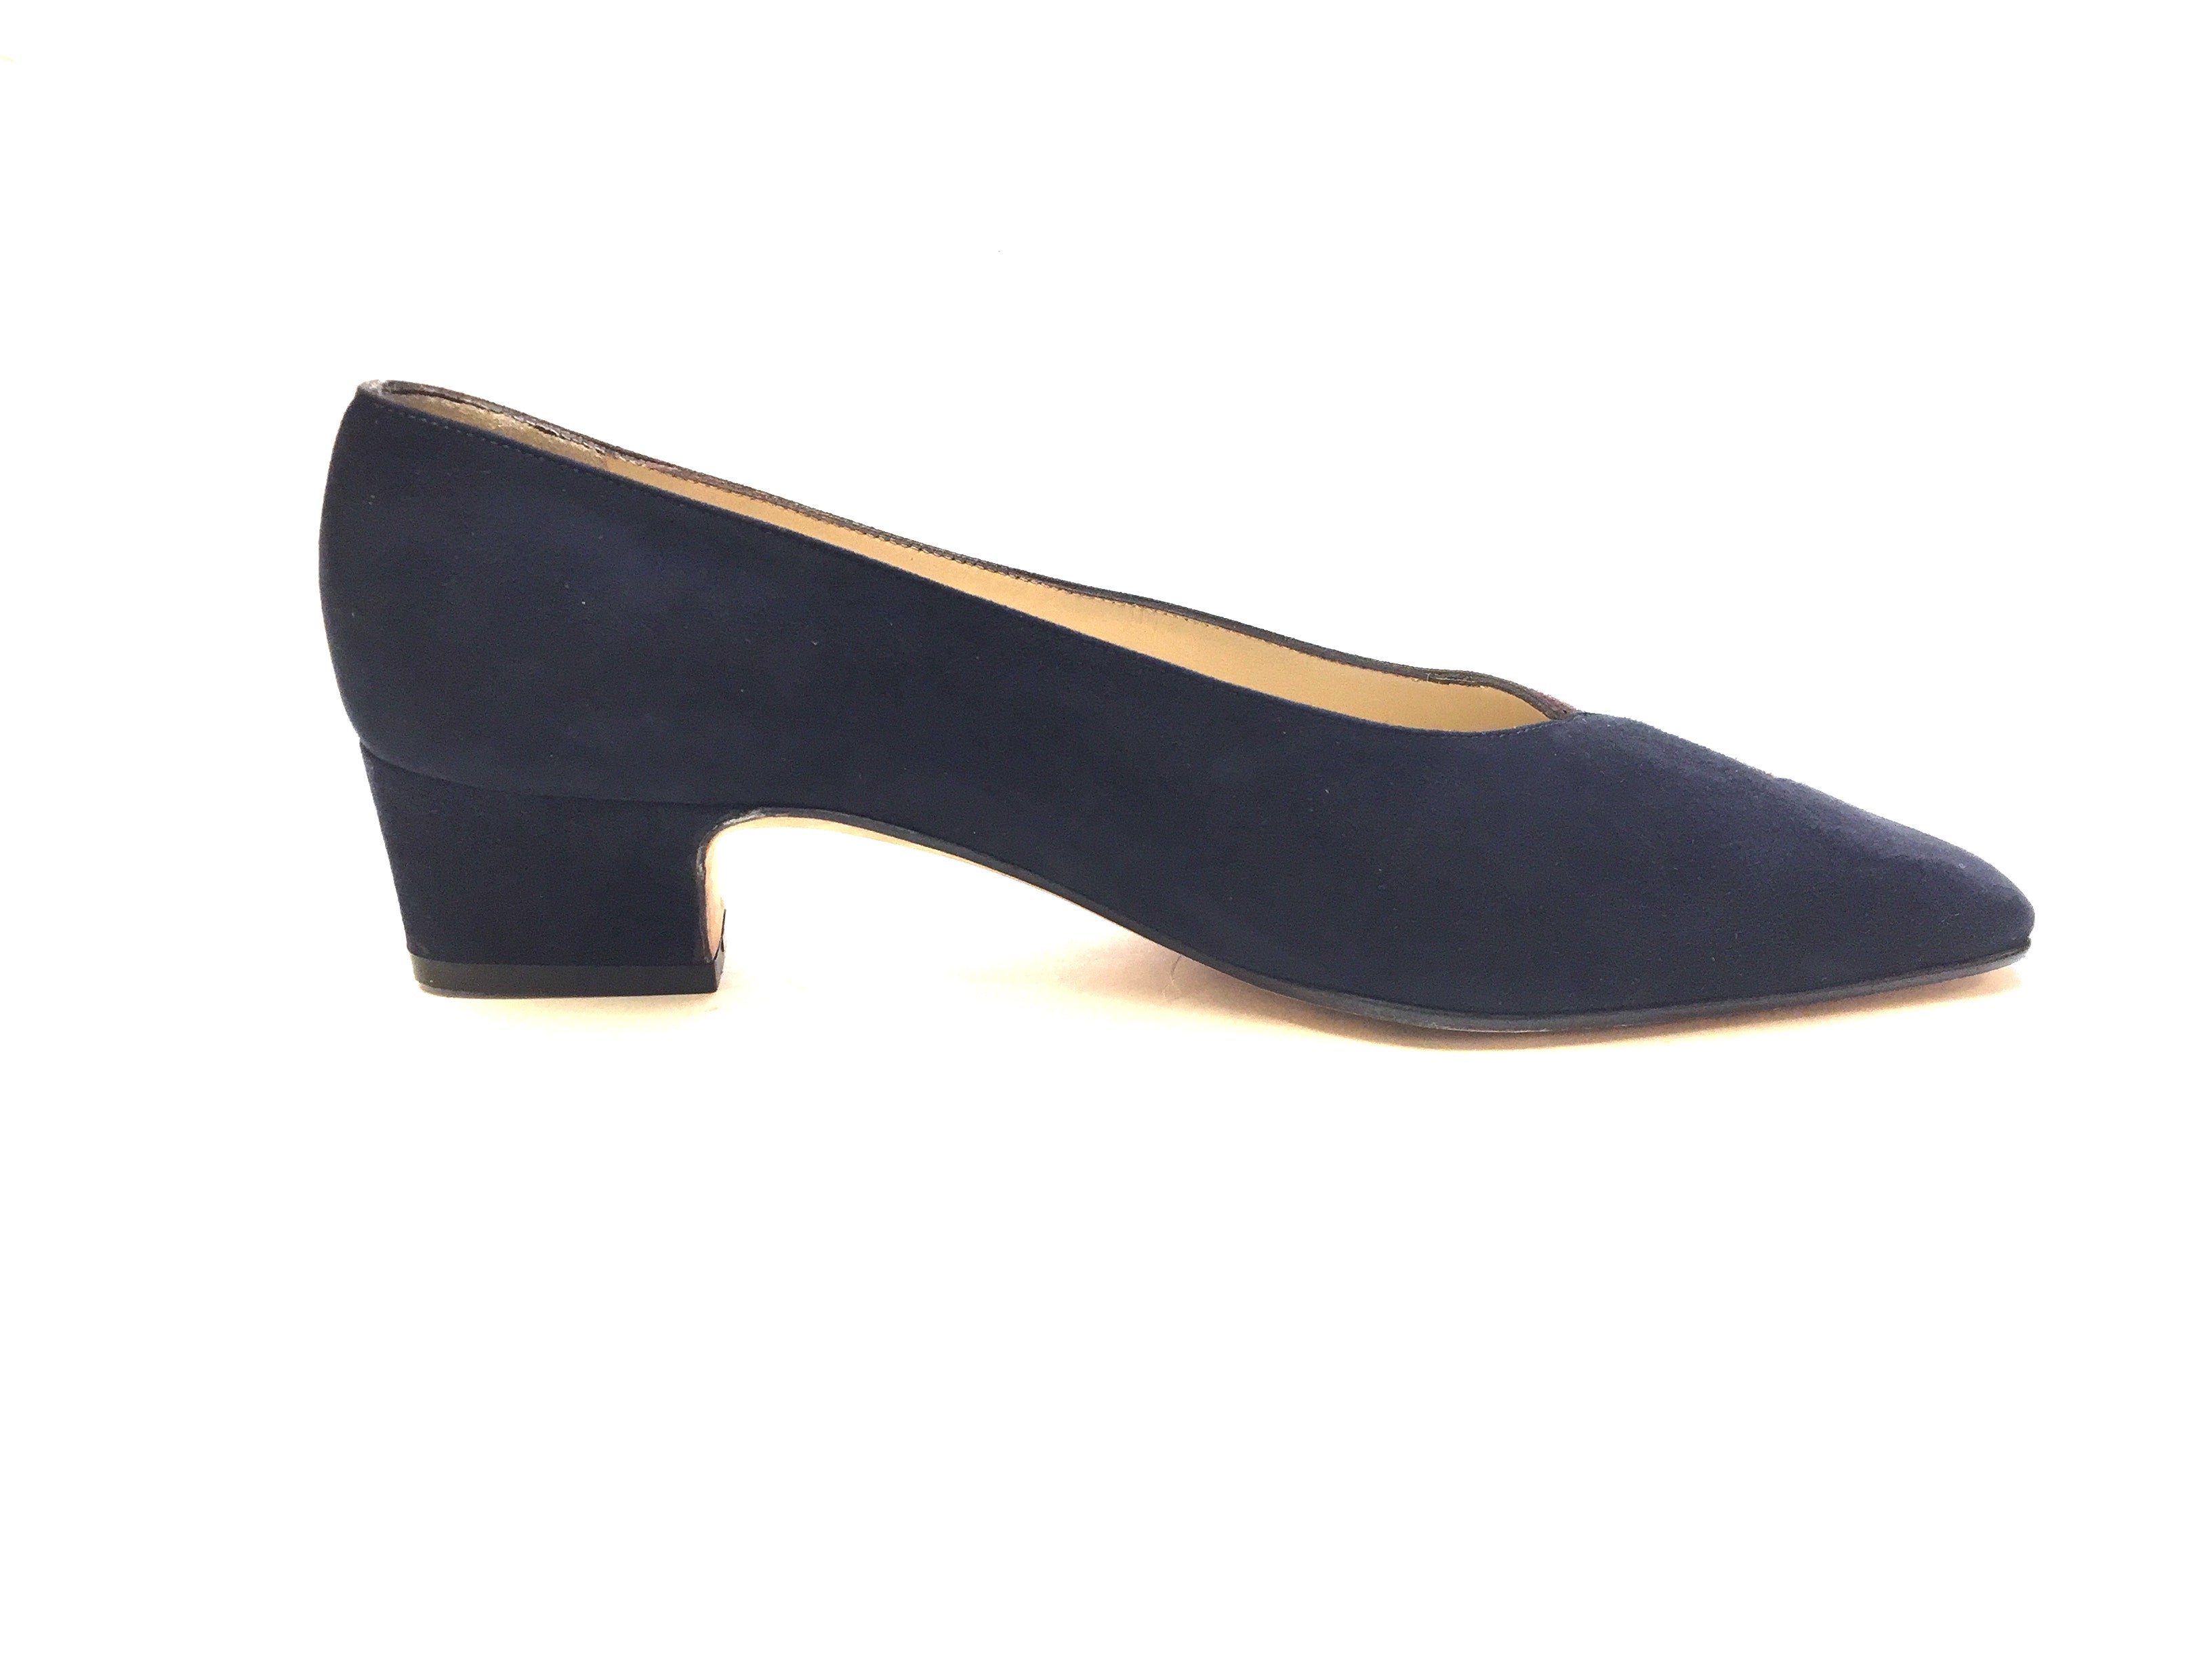 navy blue low heel shoes